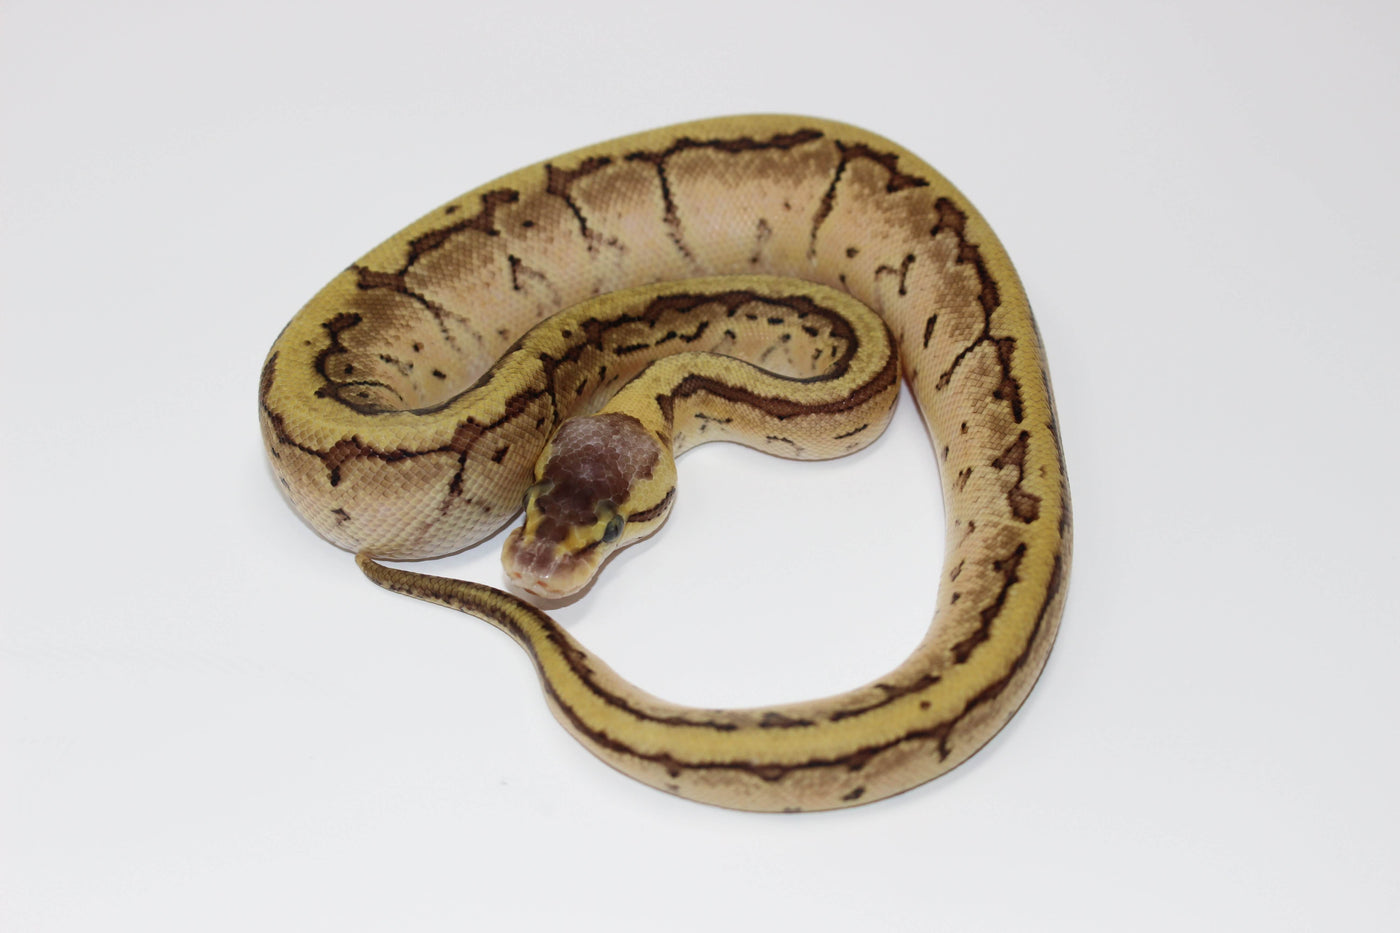 enchi lemon blast ball python for sale, buy reptiles online